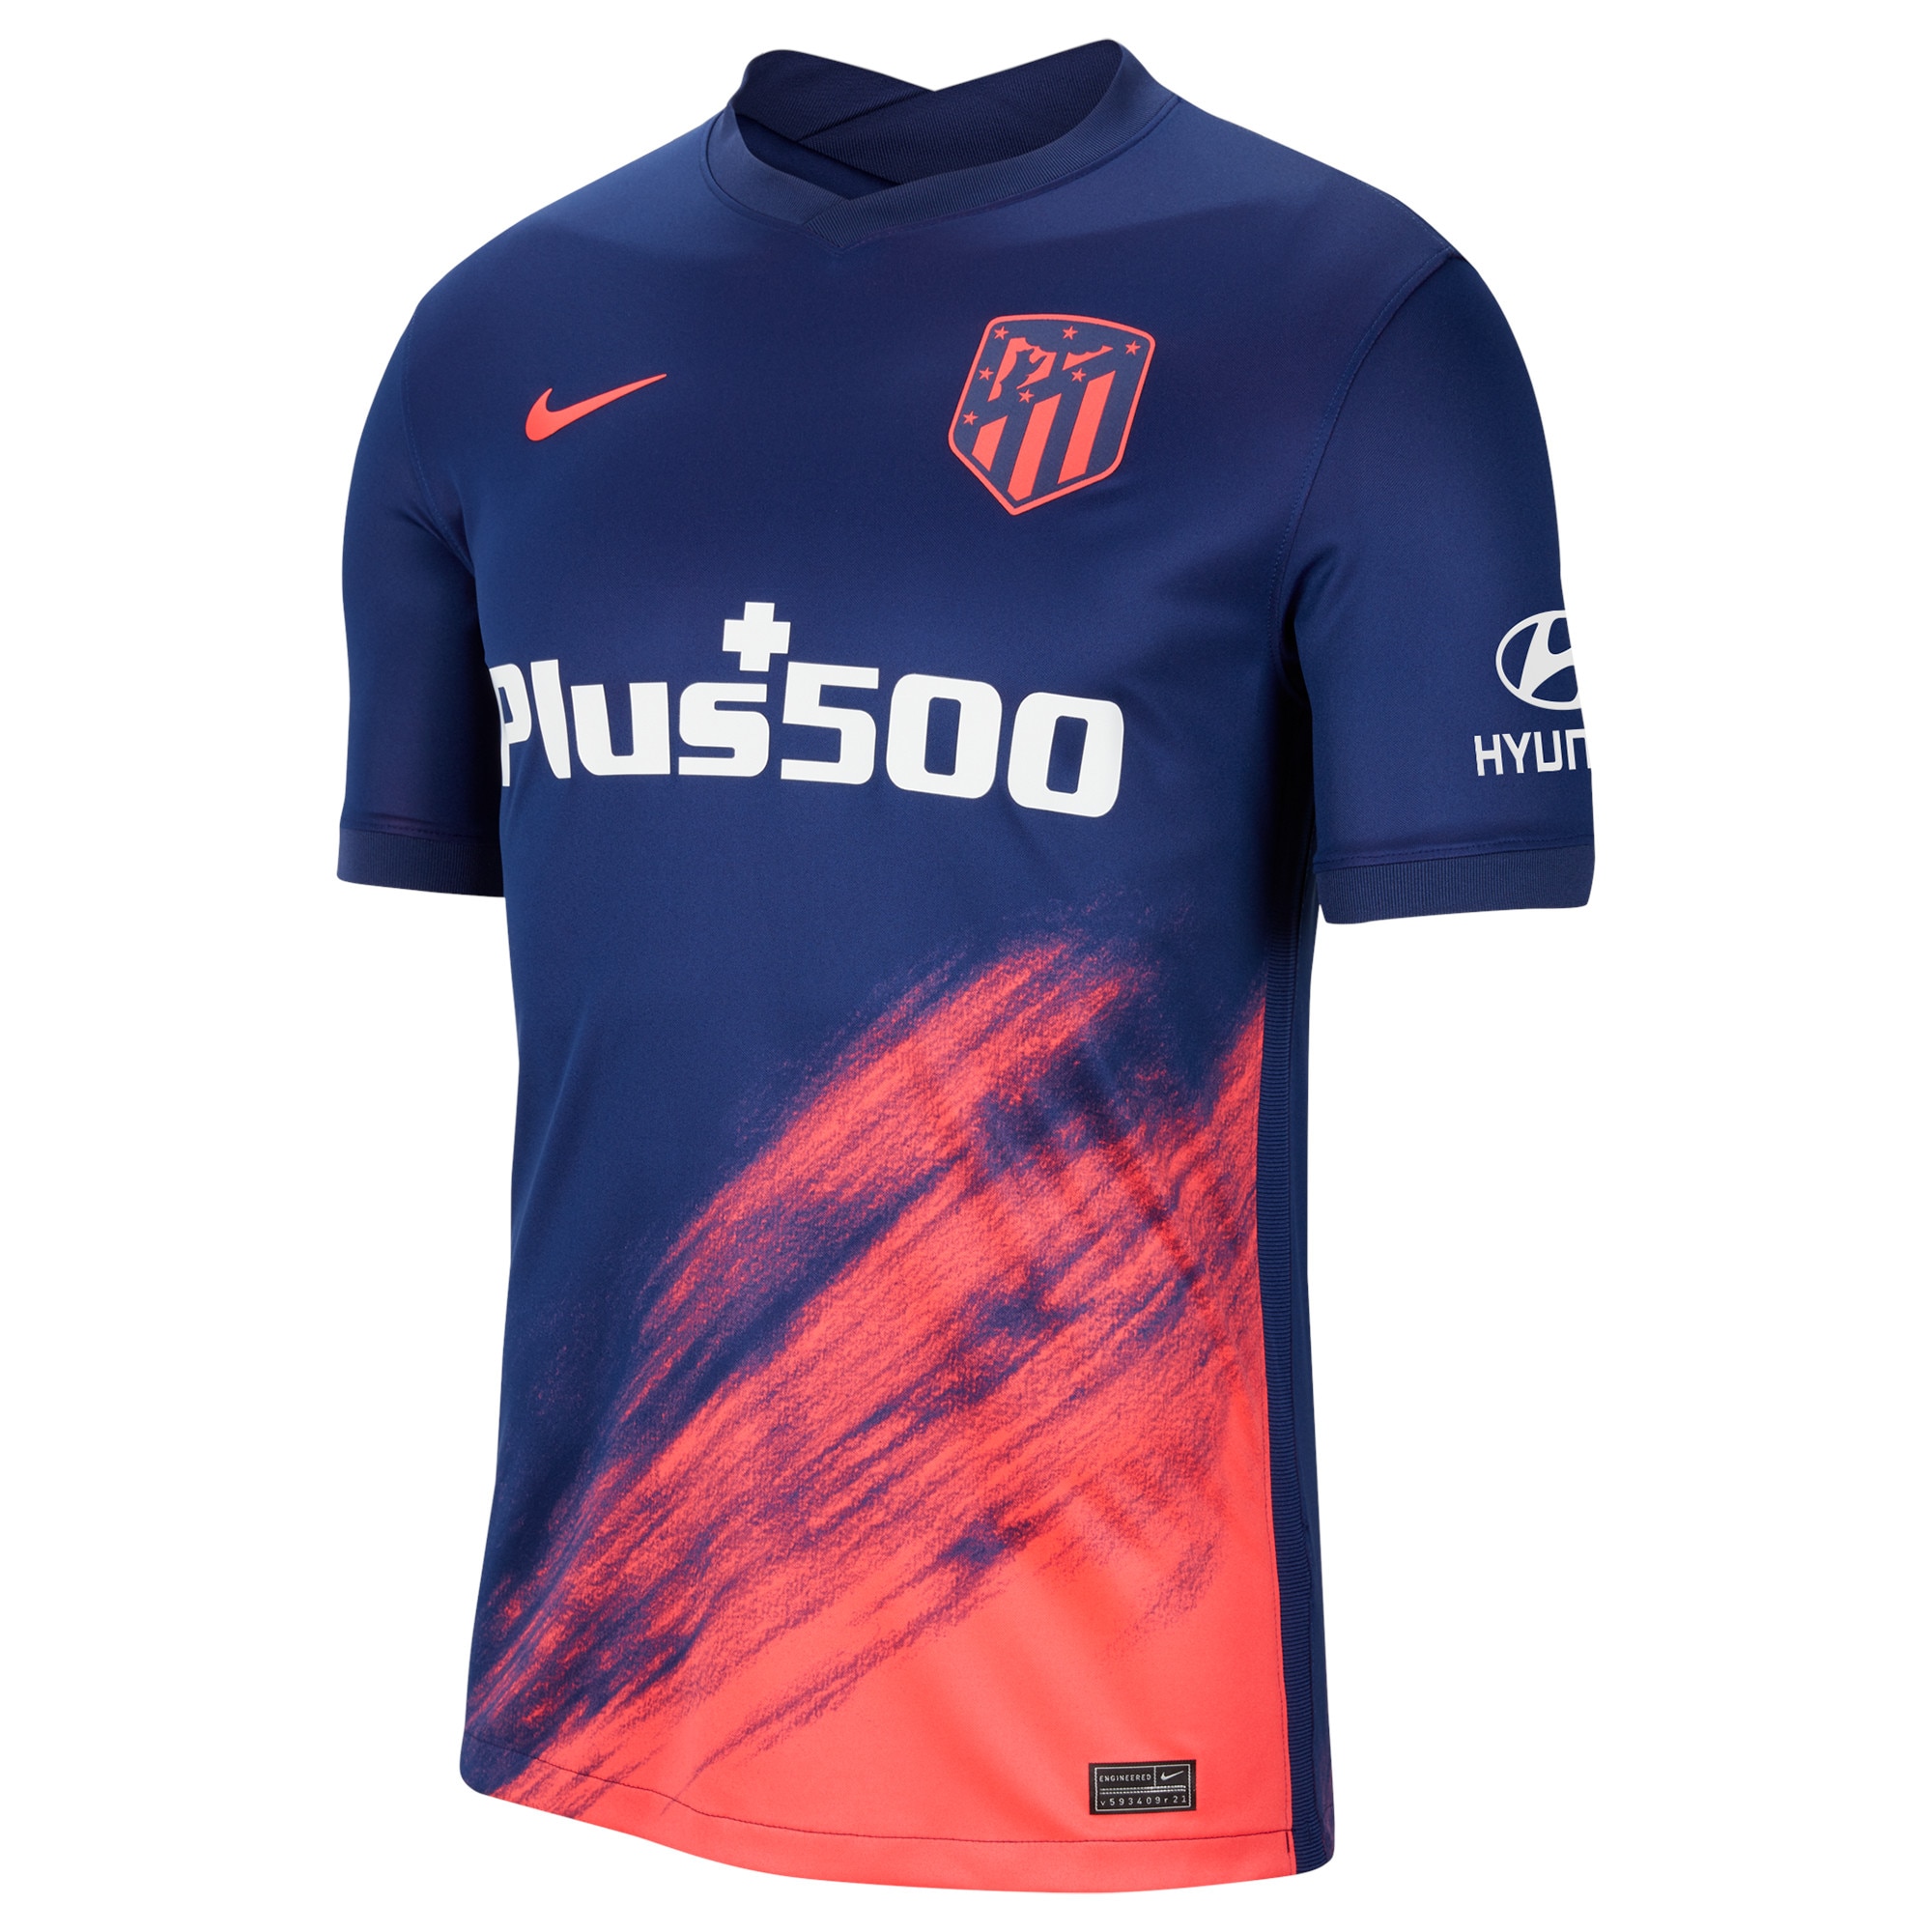 Atlético de Madrid Away Stadium Shirt 2021-22 with J.M. Giménez 2 printing